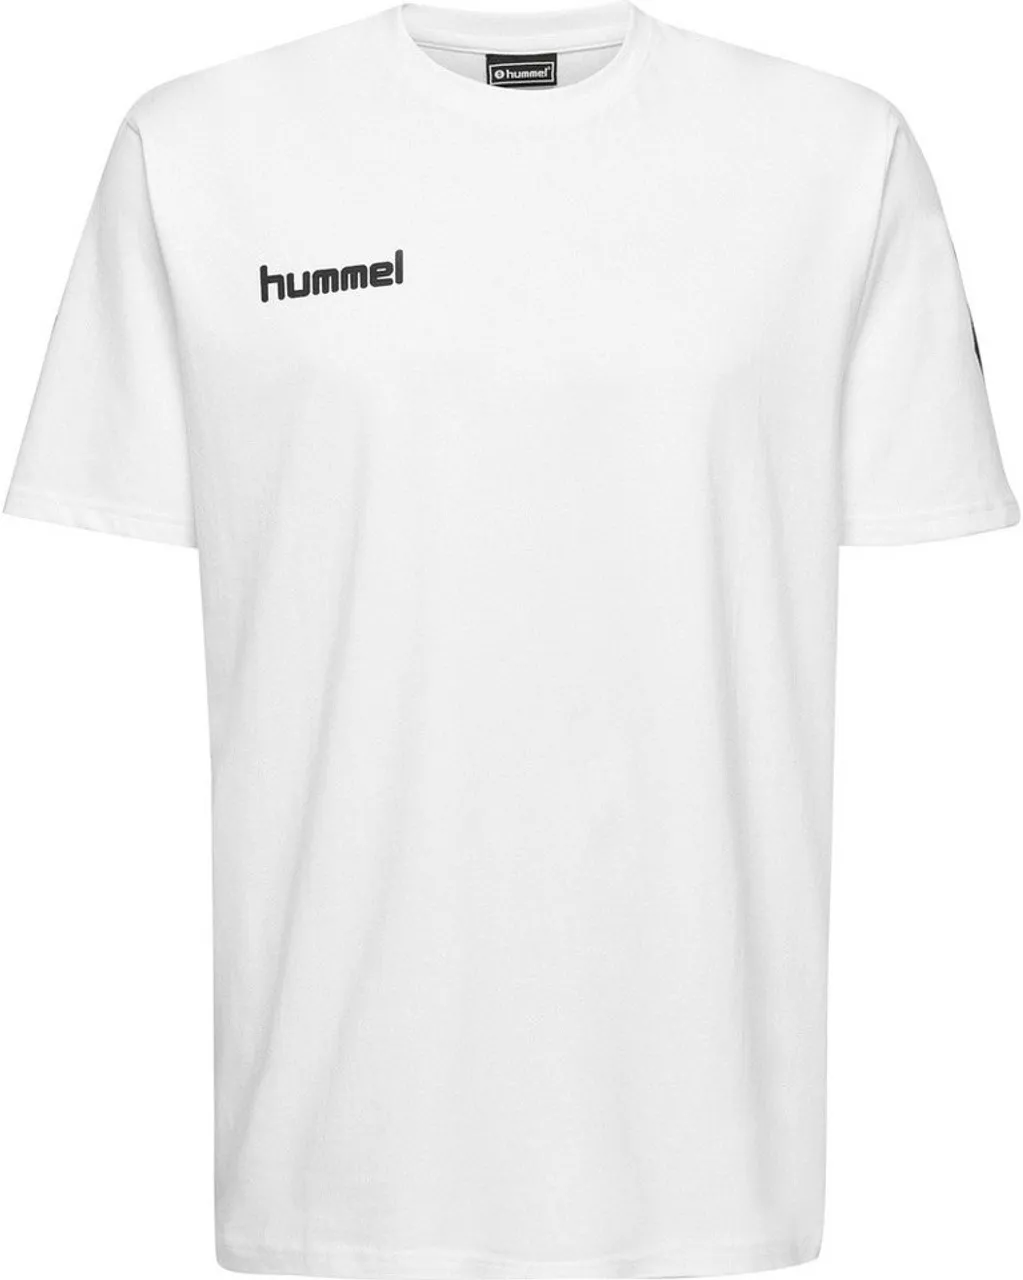 hummel T-Shirt Hmlgo Kids Cotton T-Shirt S/S